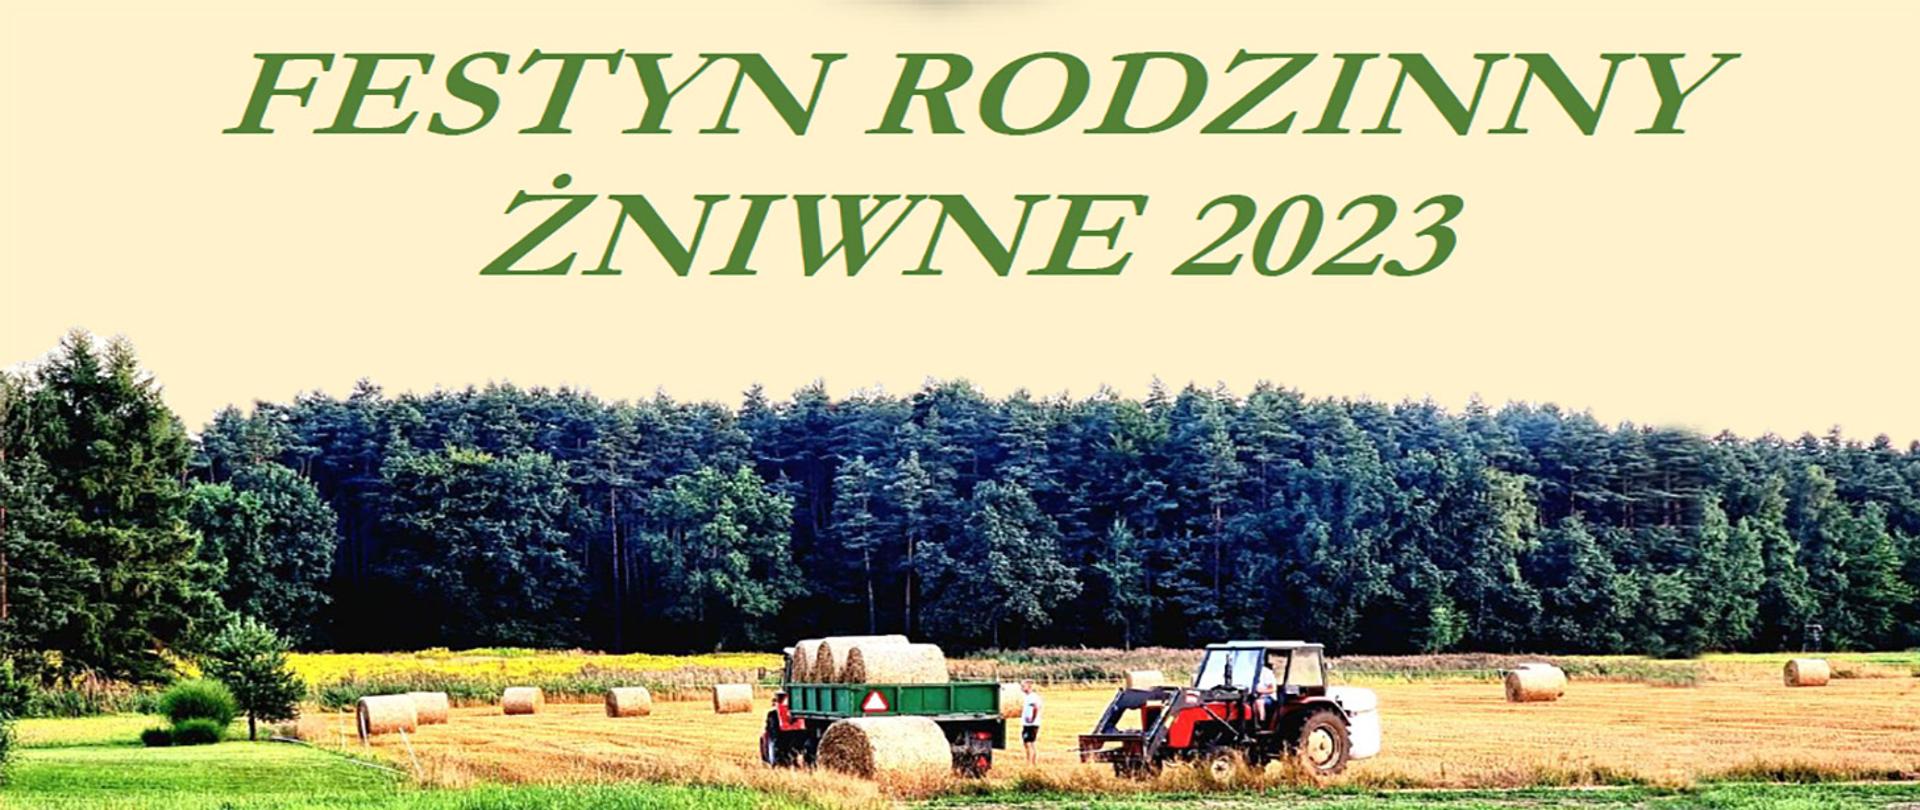 Traktory zbierające słomę z pola oraz napis Festyn Rodzinny Żniwne 2023